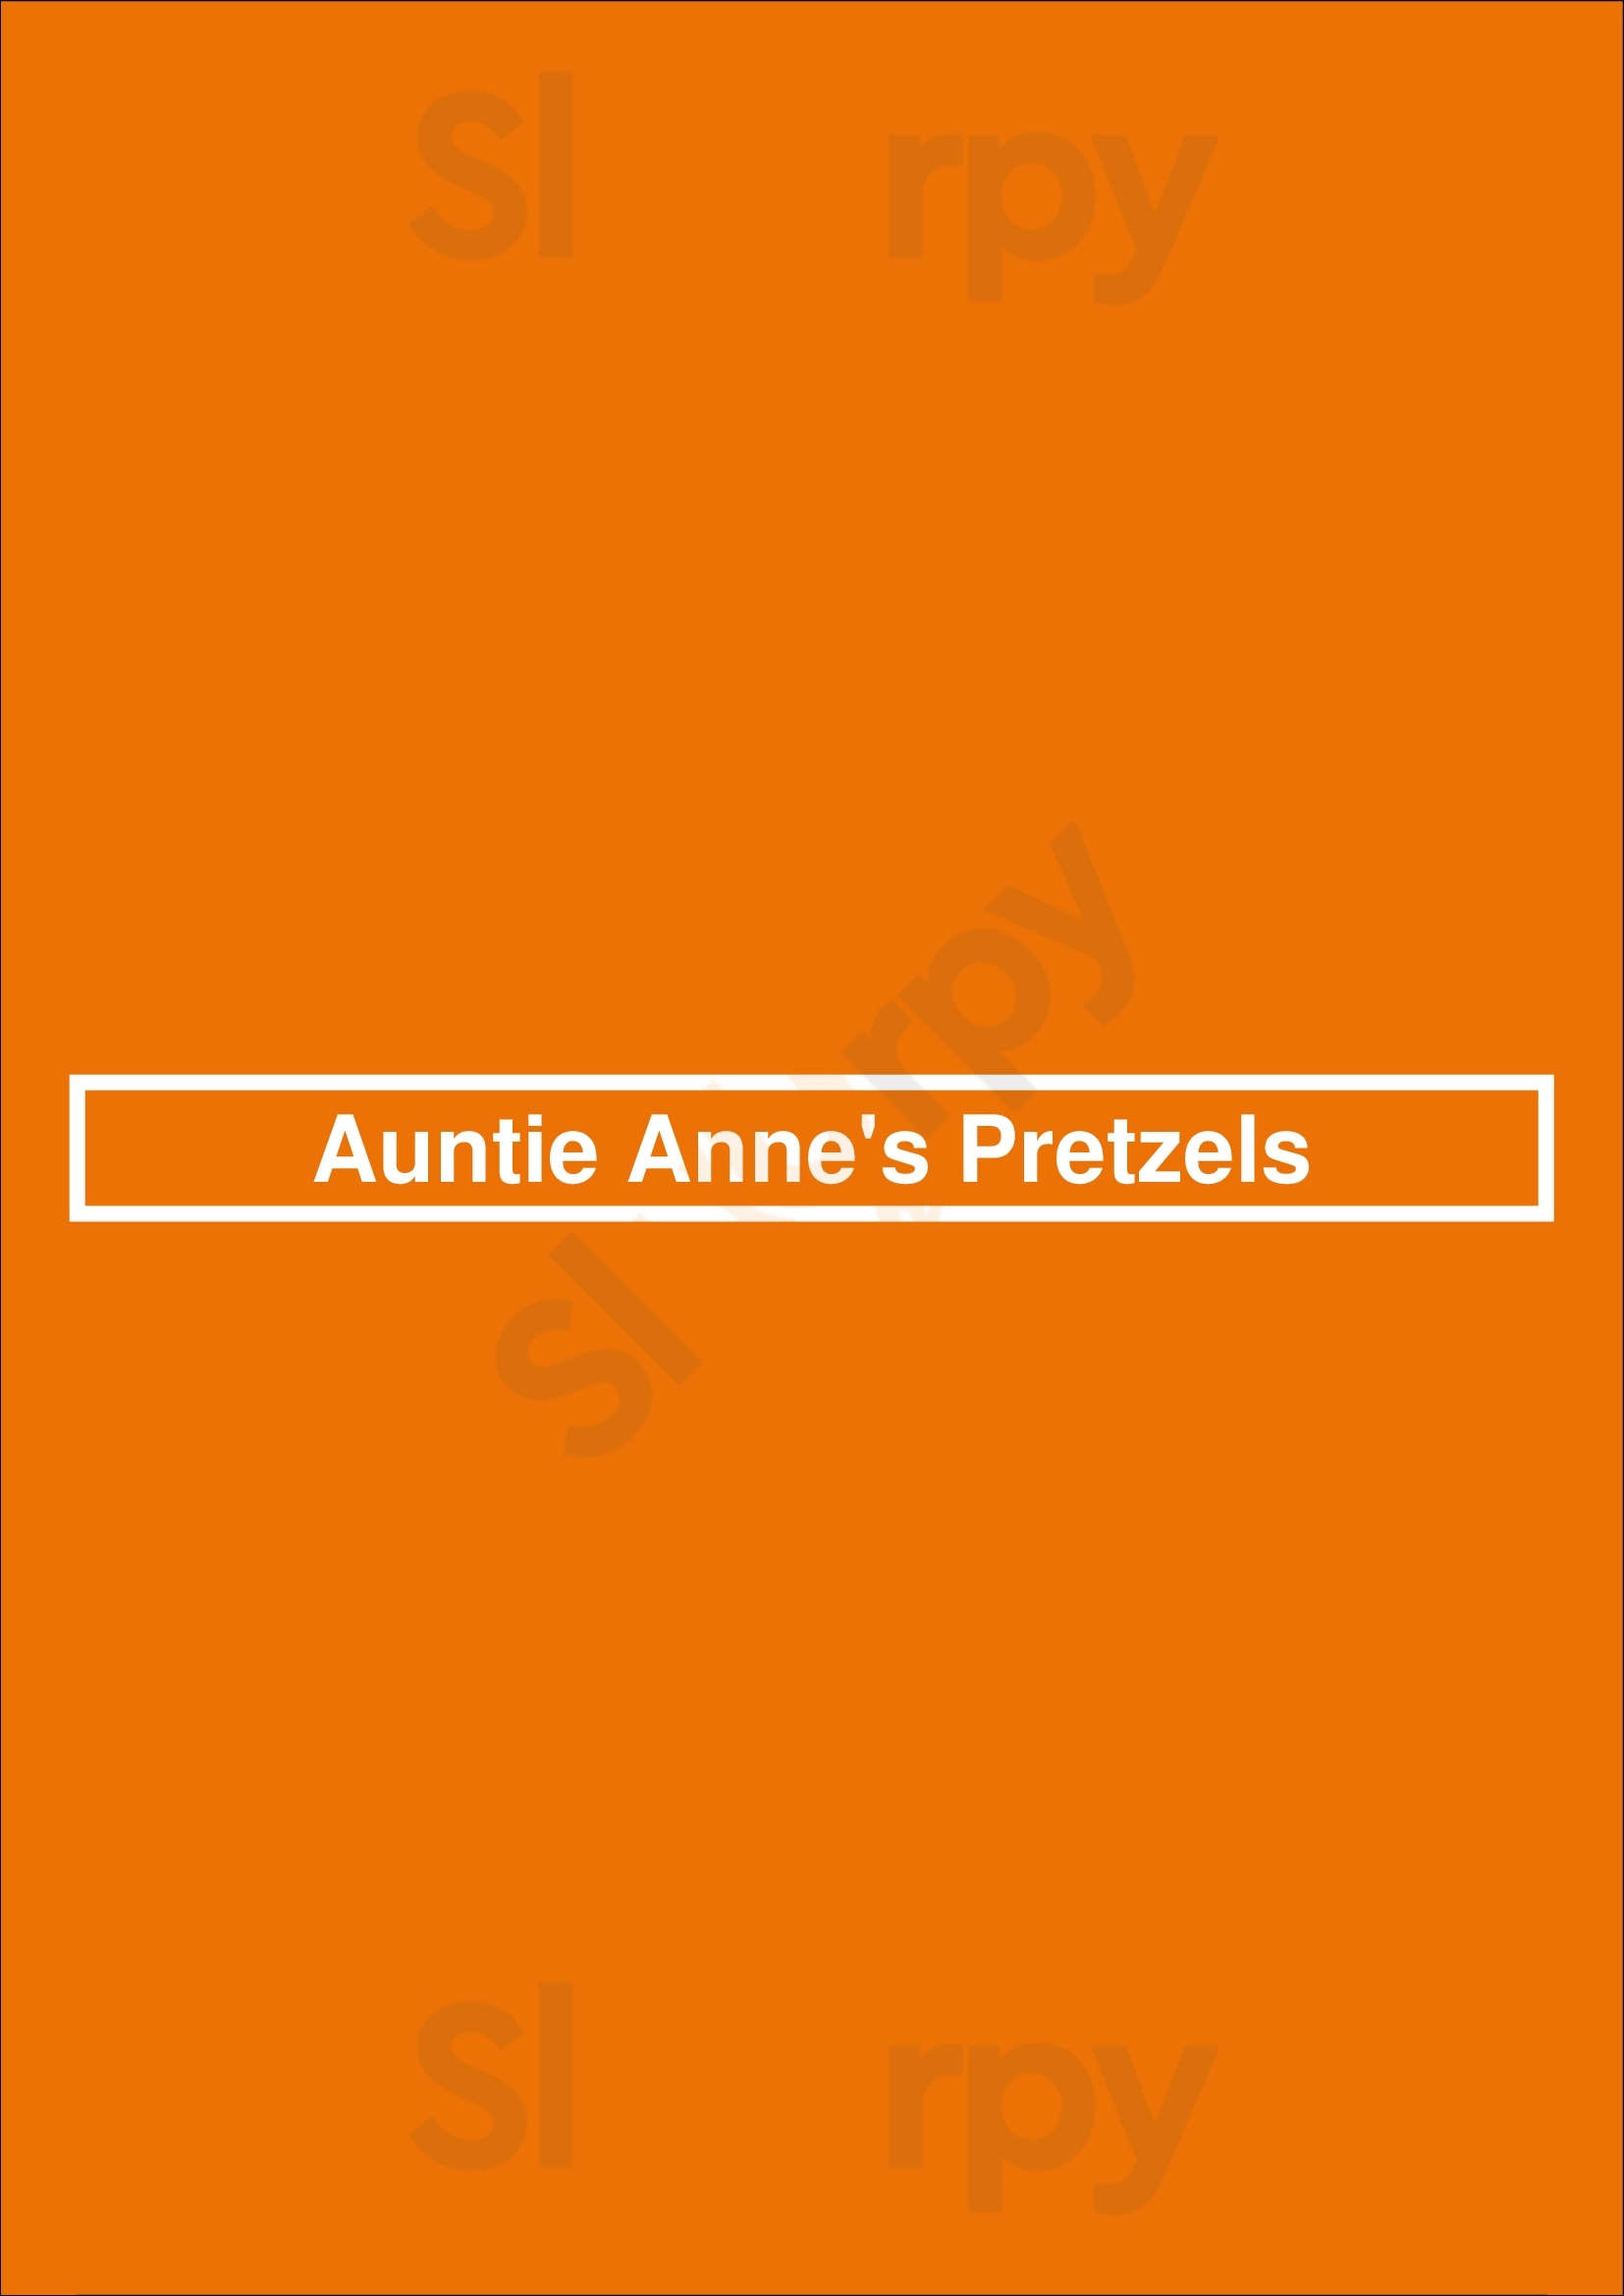 Auntie Anne's Pretzels Reno Menu - 1